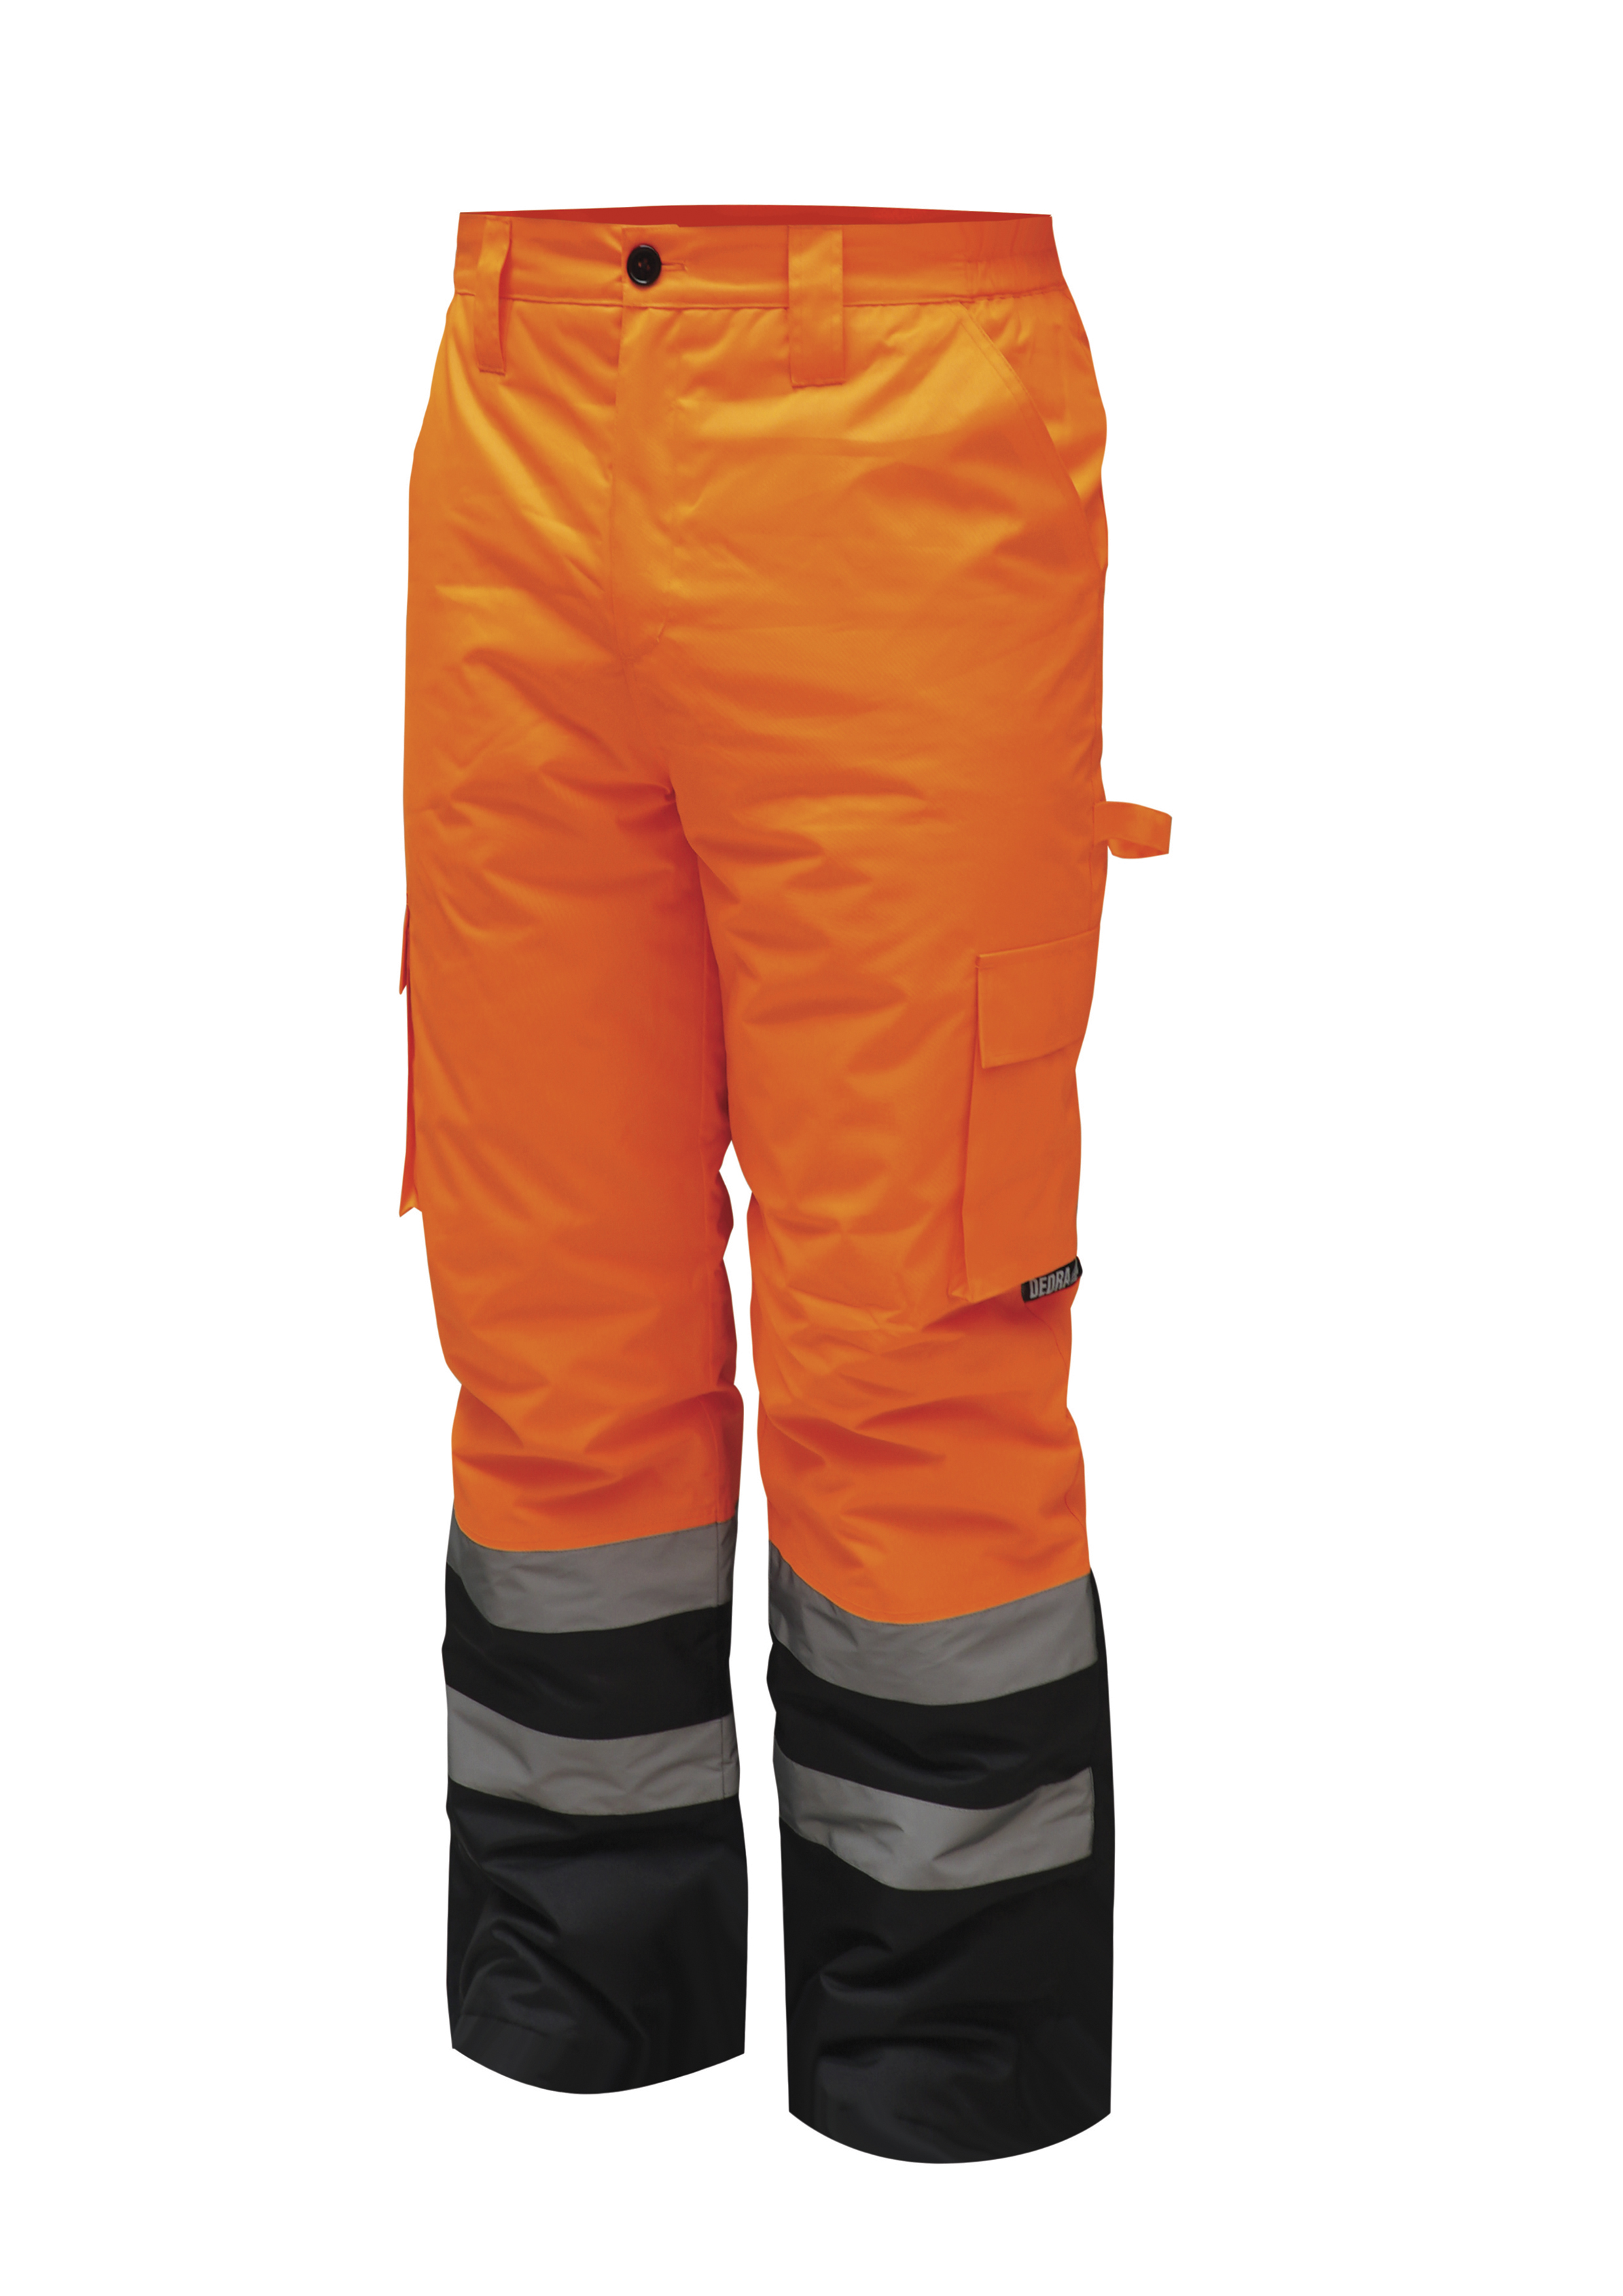 Reflexní zateplené kalhoty vel. S, oranžové DEDRA BH80SP2-S + Dárek, servis bez starostí v hodnotě 300Kč